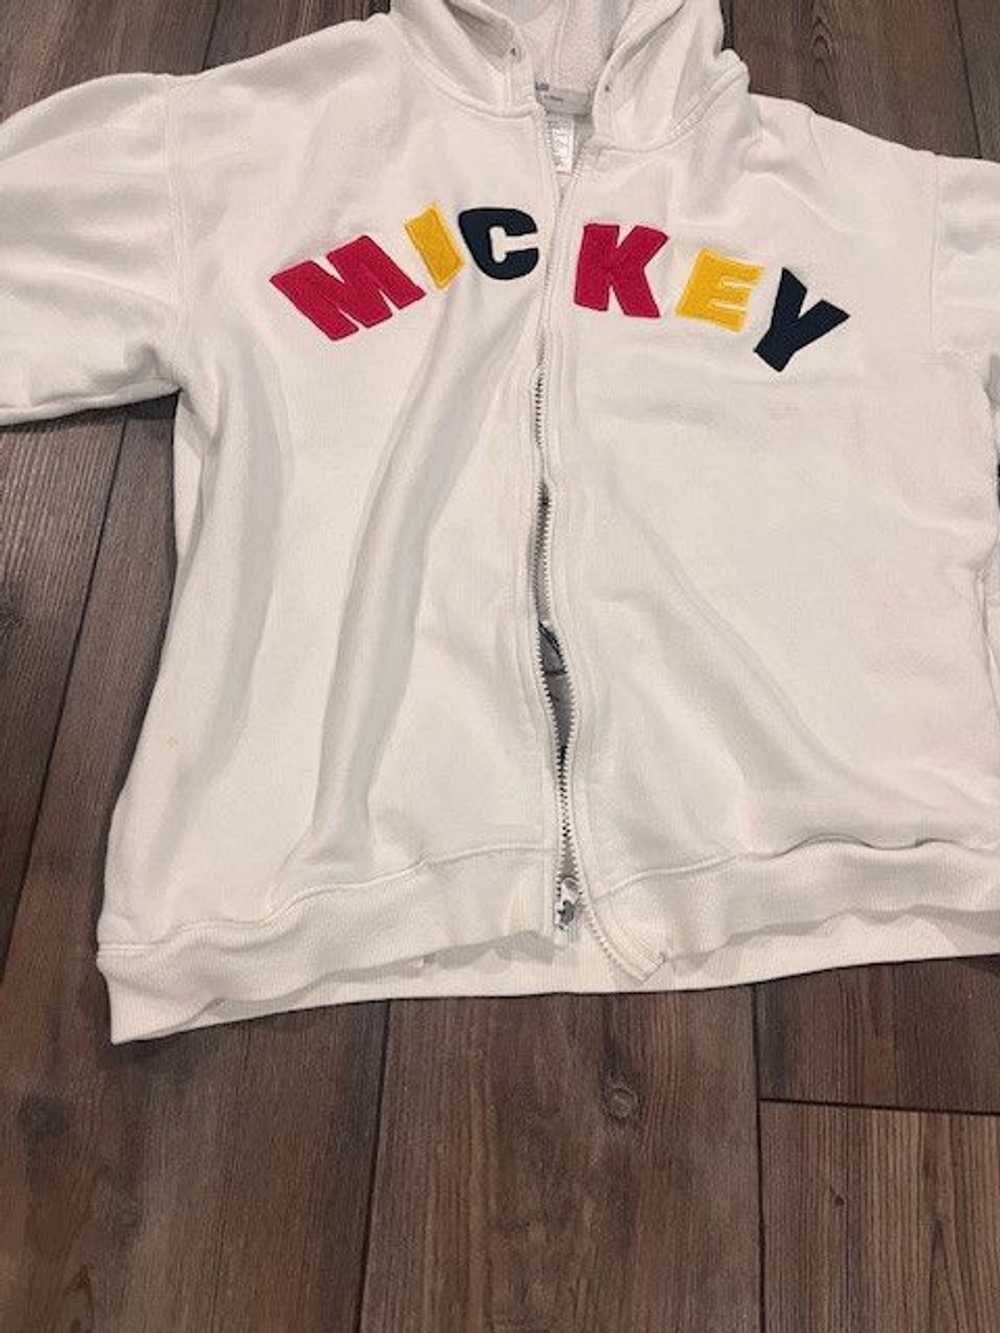 Disney Mickey Mouse White Jacket - image 2